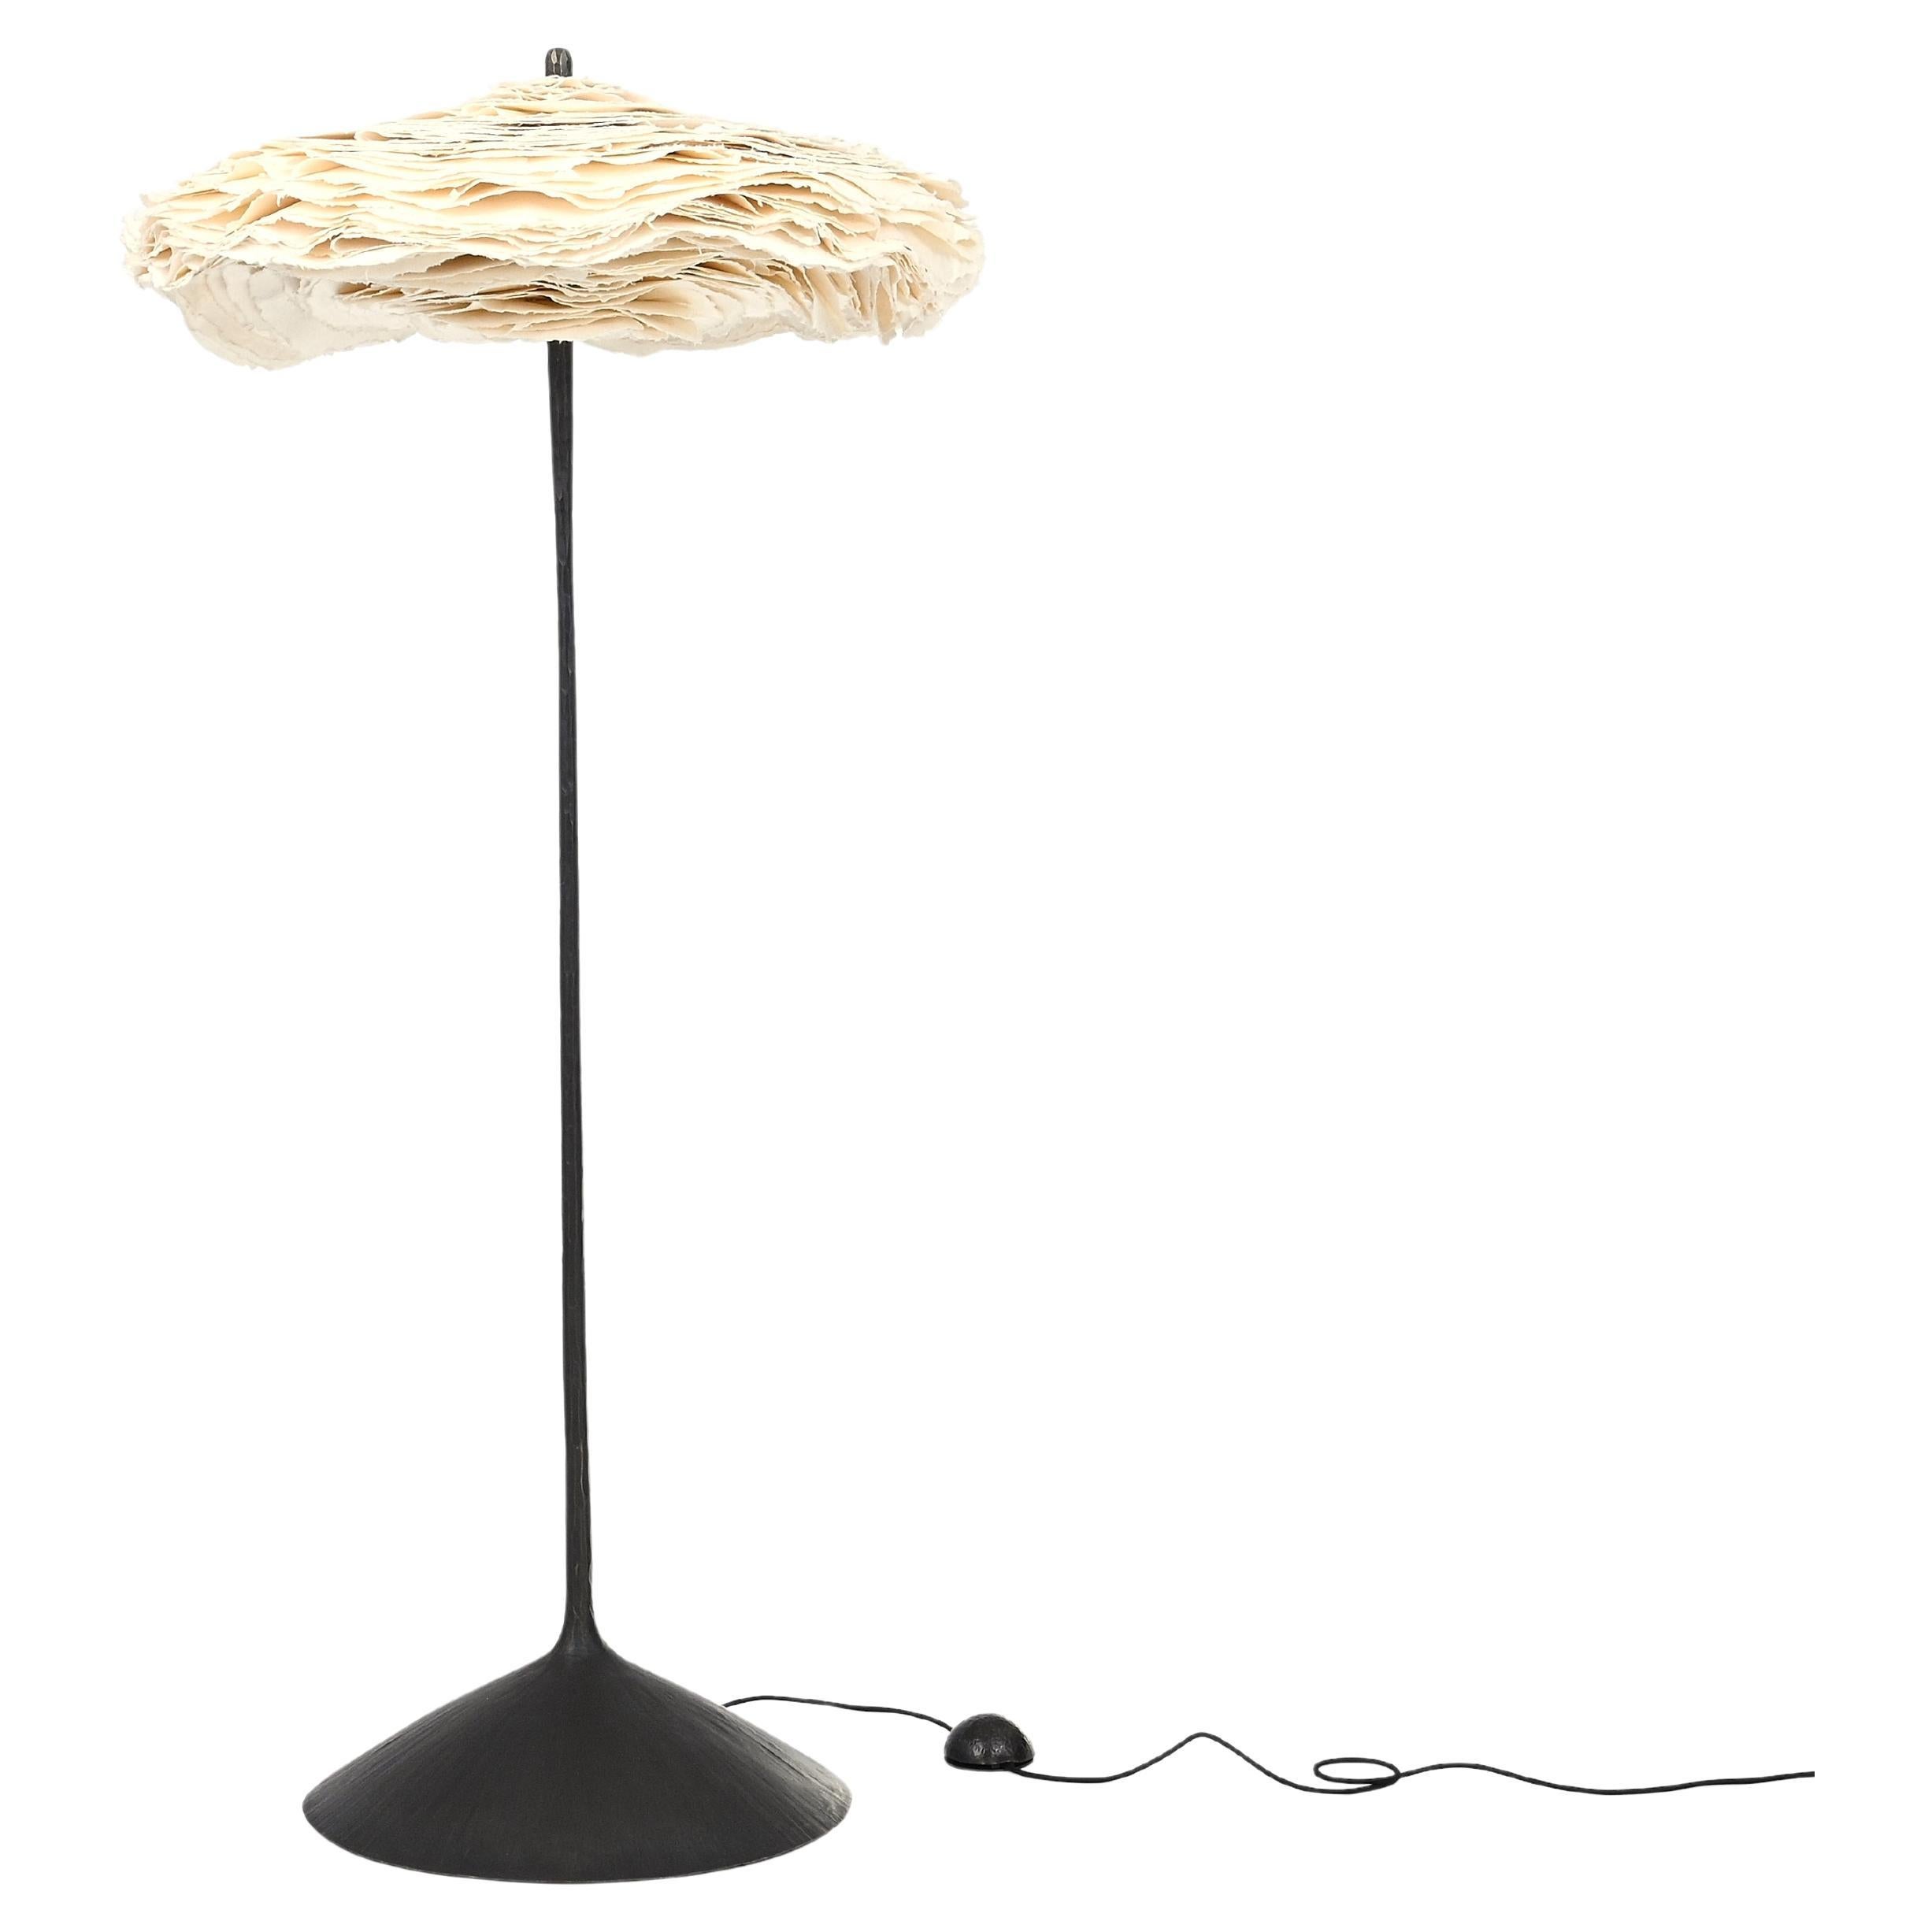 Maria Group + Spockdesign “Cornette” Floor Lamp